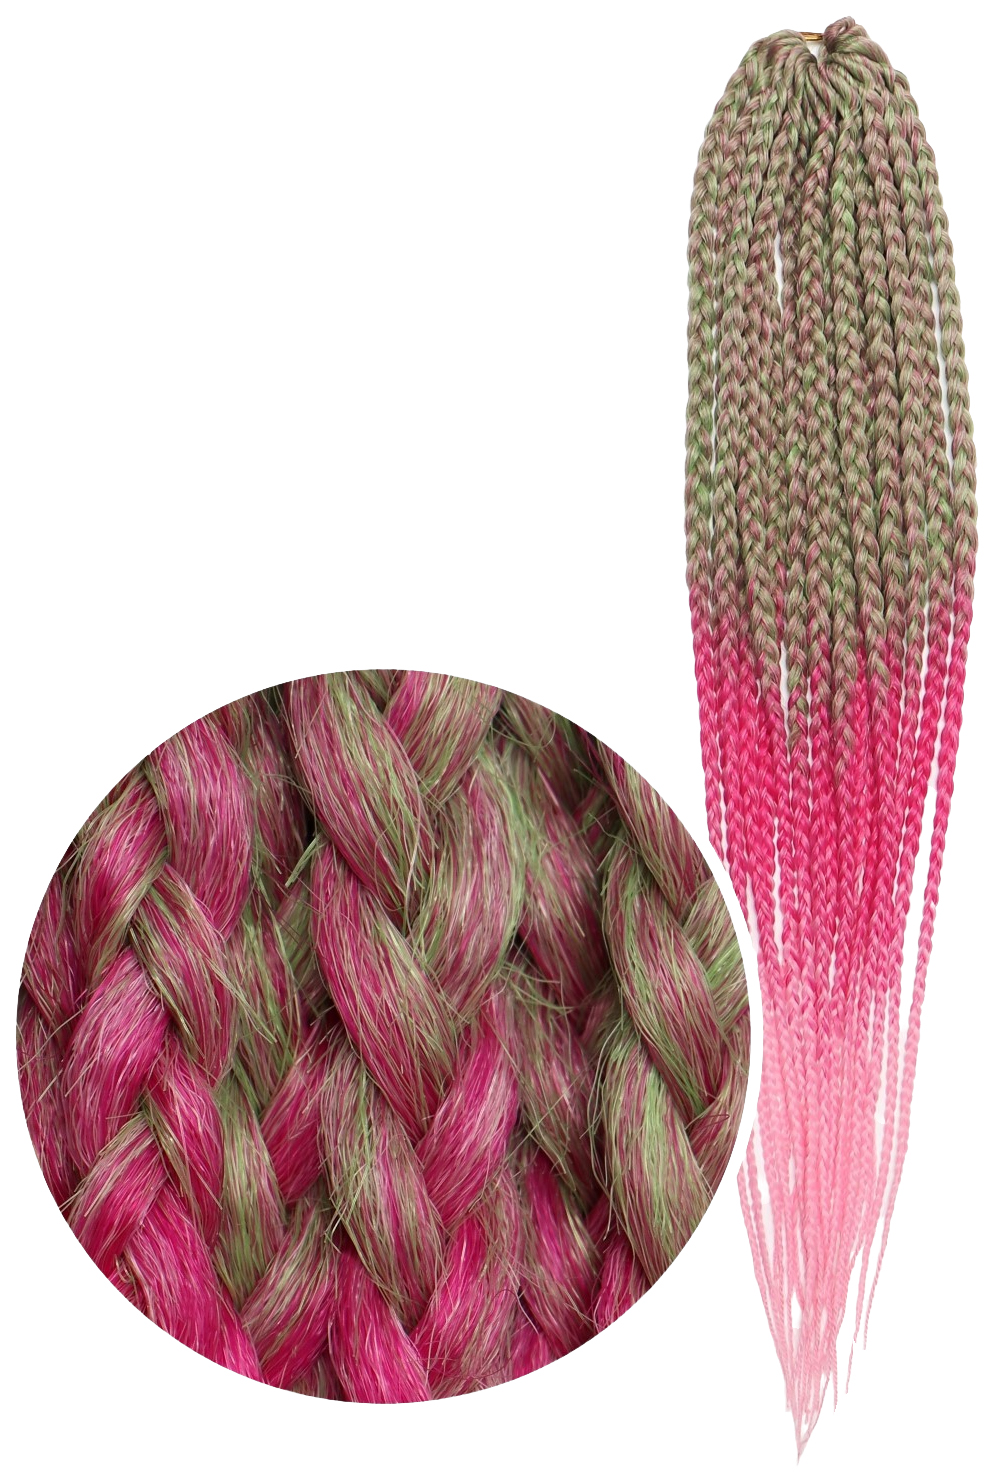 Афрокосы Queen Fair Sim-Braids CE 18 прядей 60 см цвет русый зелёный розовый FR-30 sim braids афрокосы 60 см 18 прядей ce малиновый pink